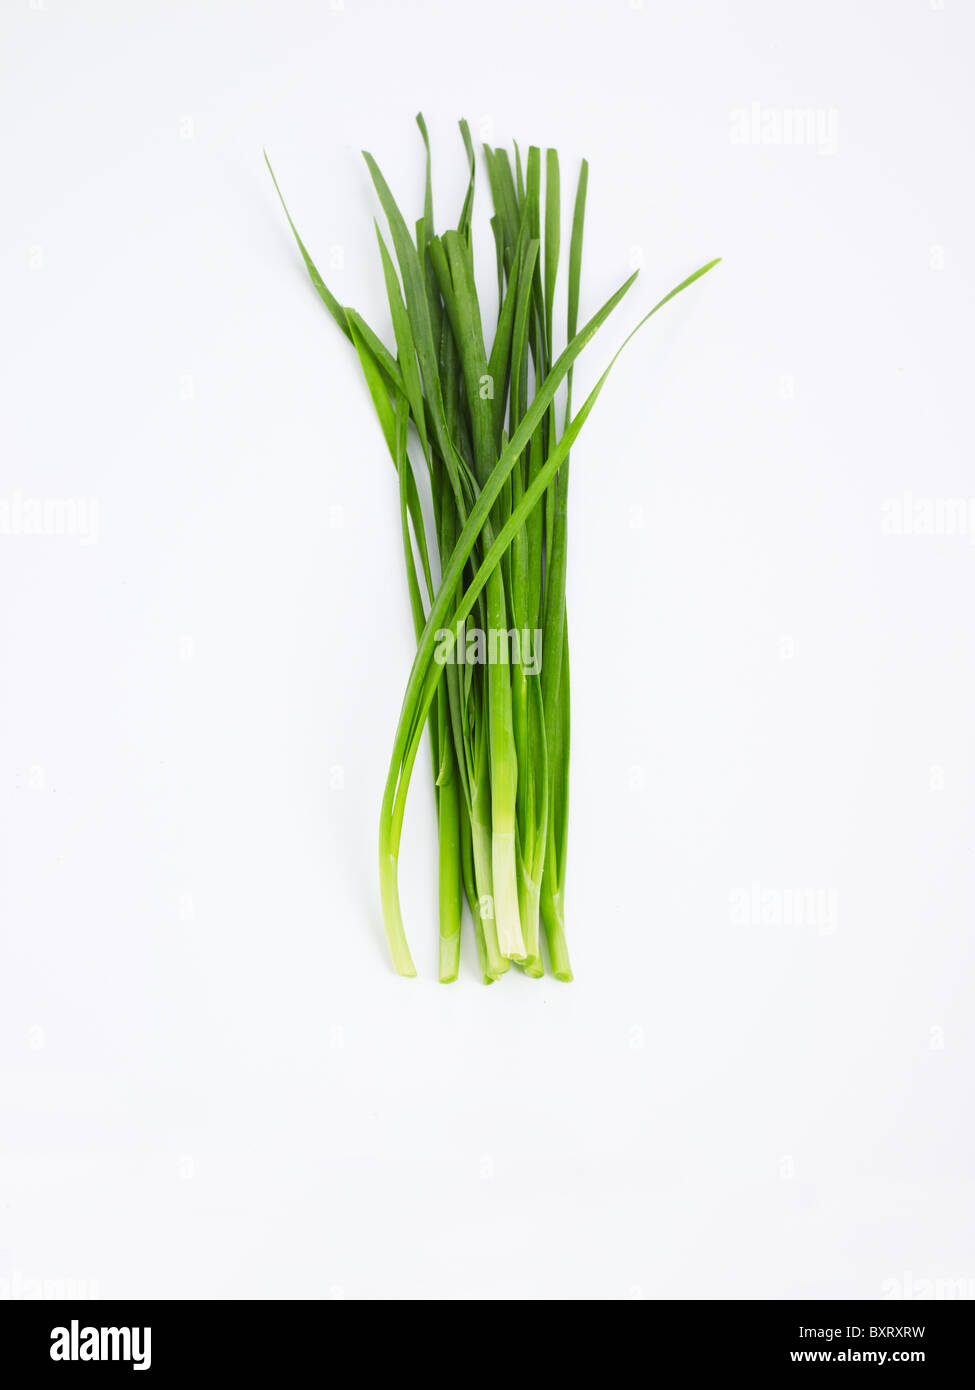 Aglio erba cipollina su sfondo bianco Foto Stock